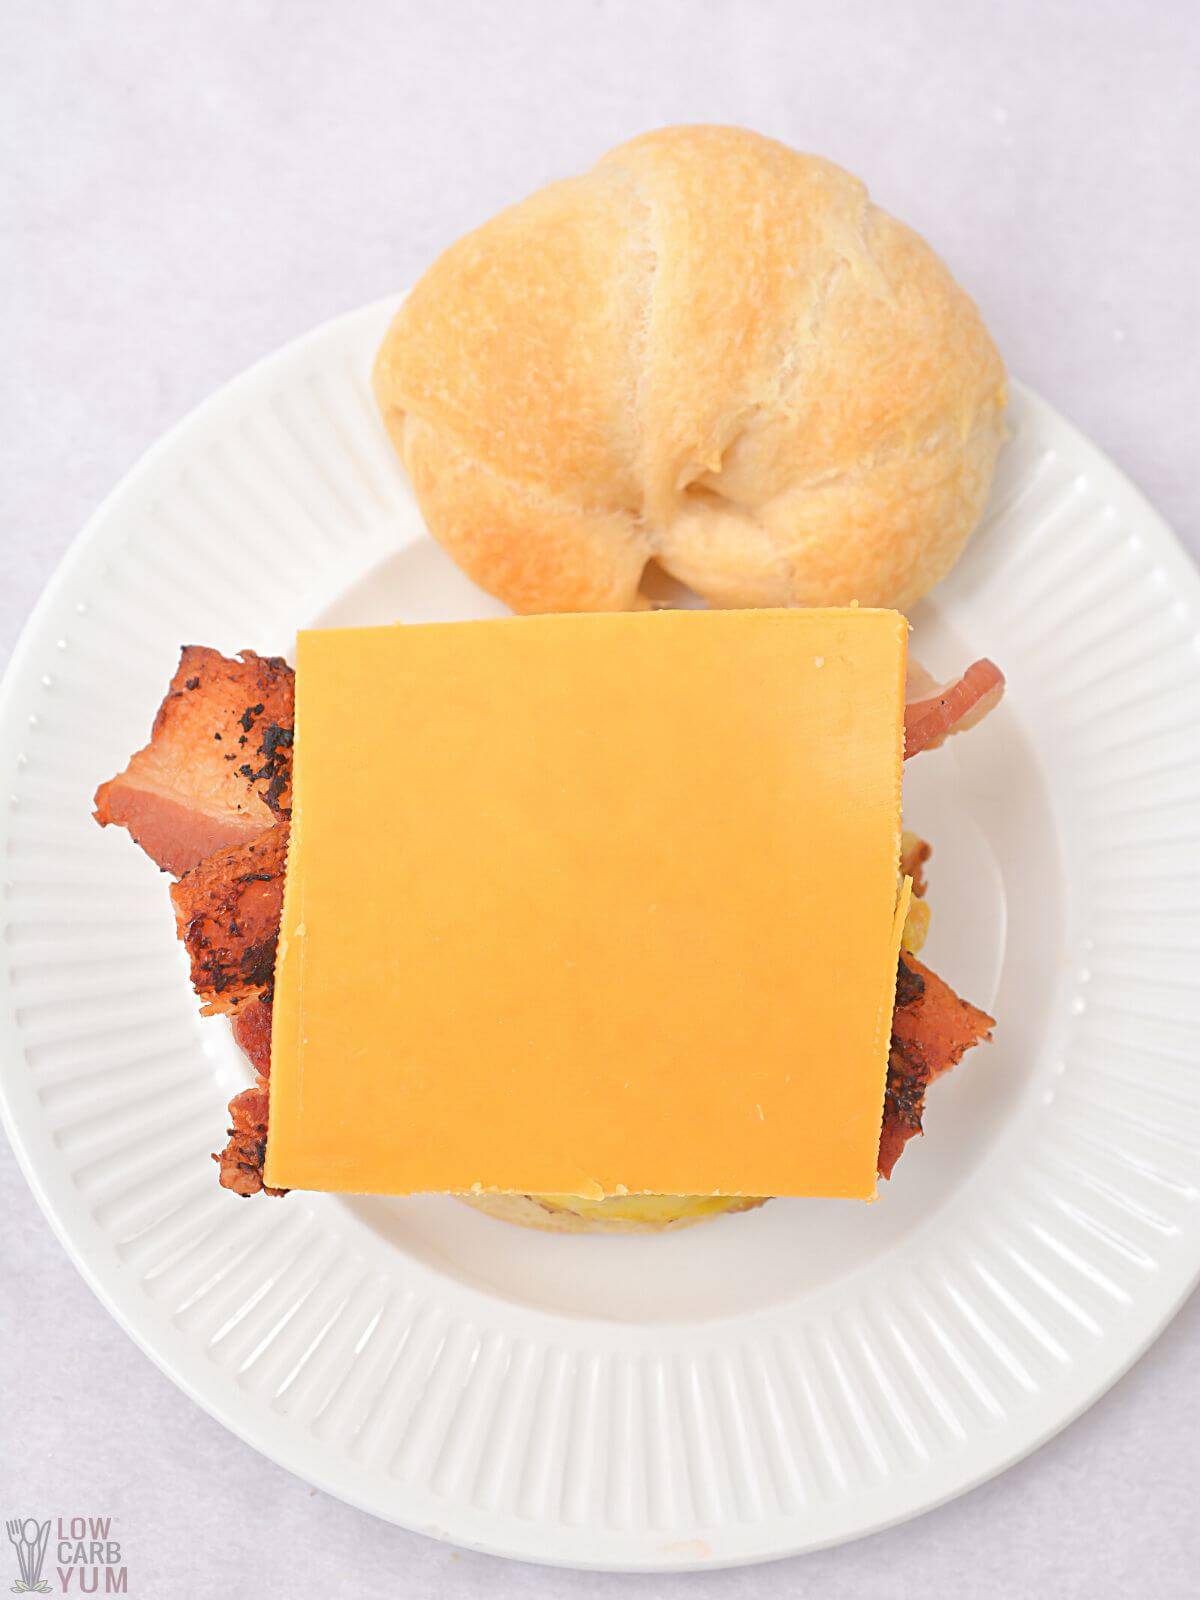 Scheibe Cheddar-Käse auf Ei-Sandwich.